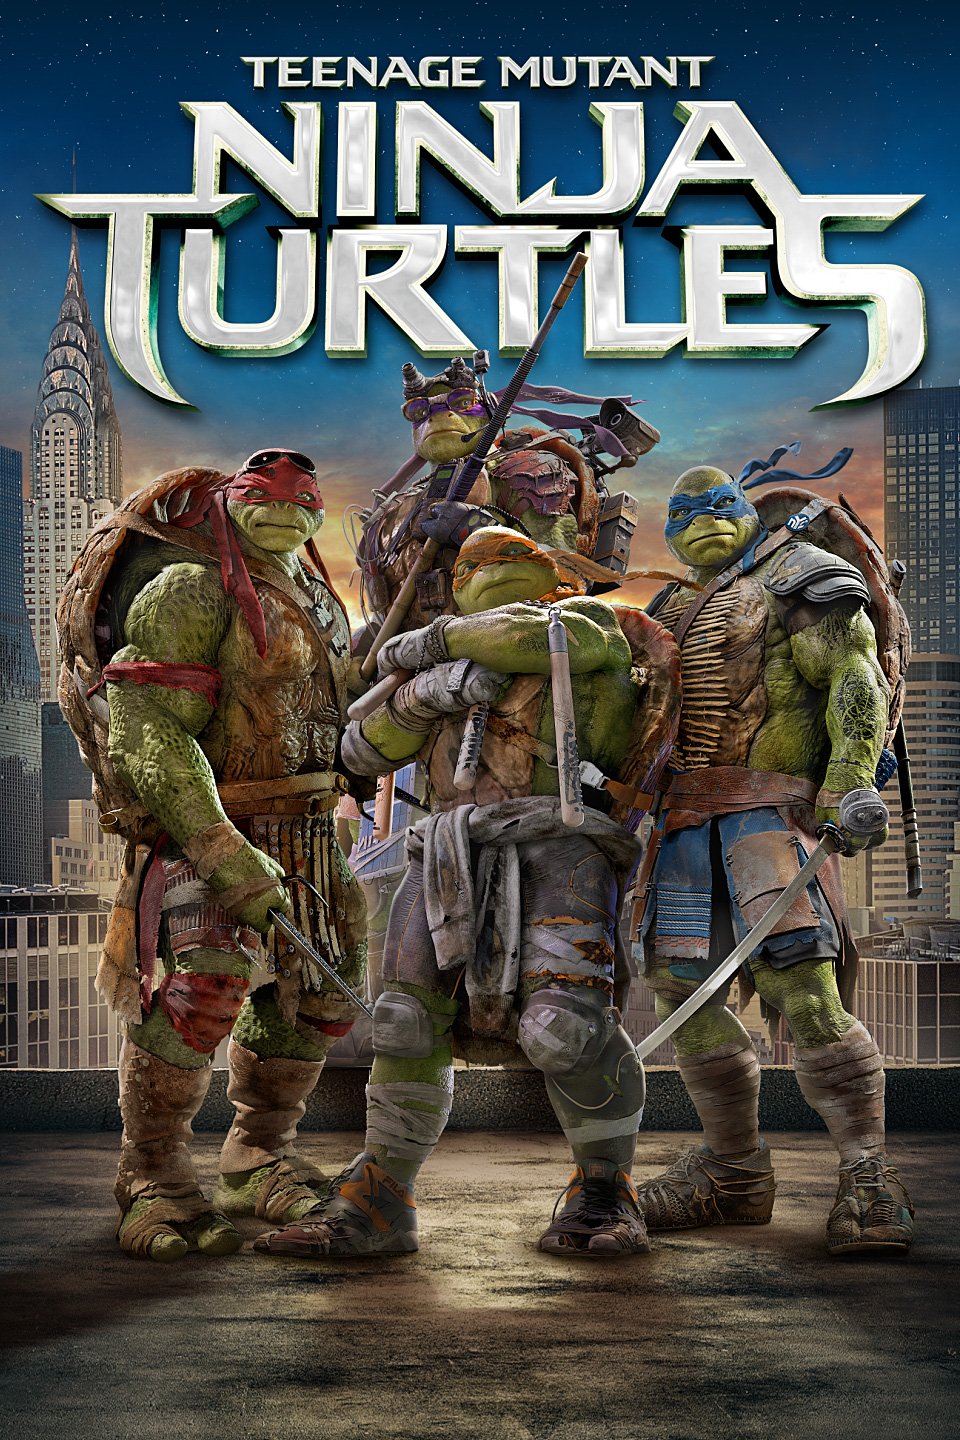 Teenage Mutant Ninja Turtles (2014) wallpaper, Movie, HQ Teenage Mutant Ninja Turtles (2014) pictureK Wallpaper 2019